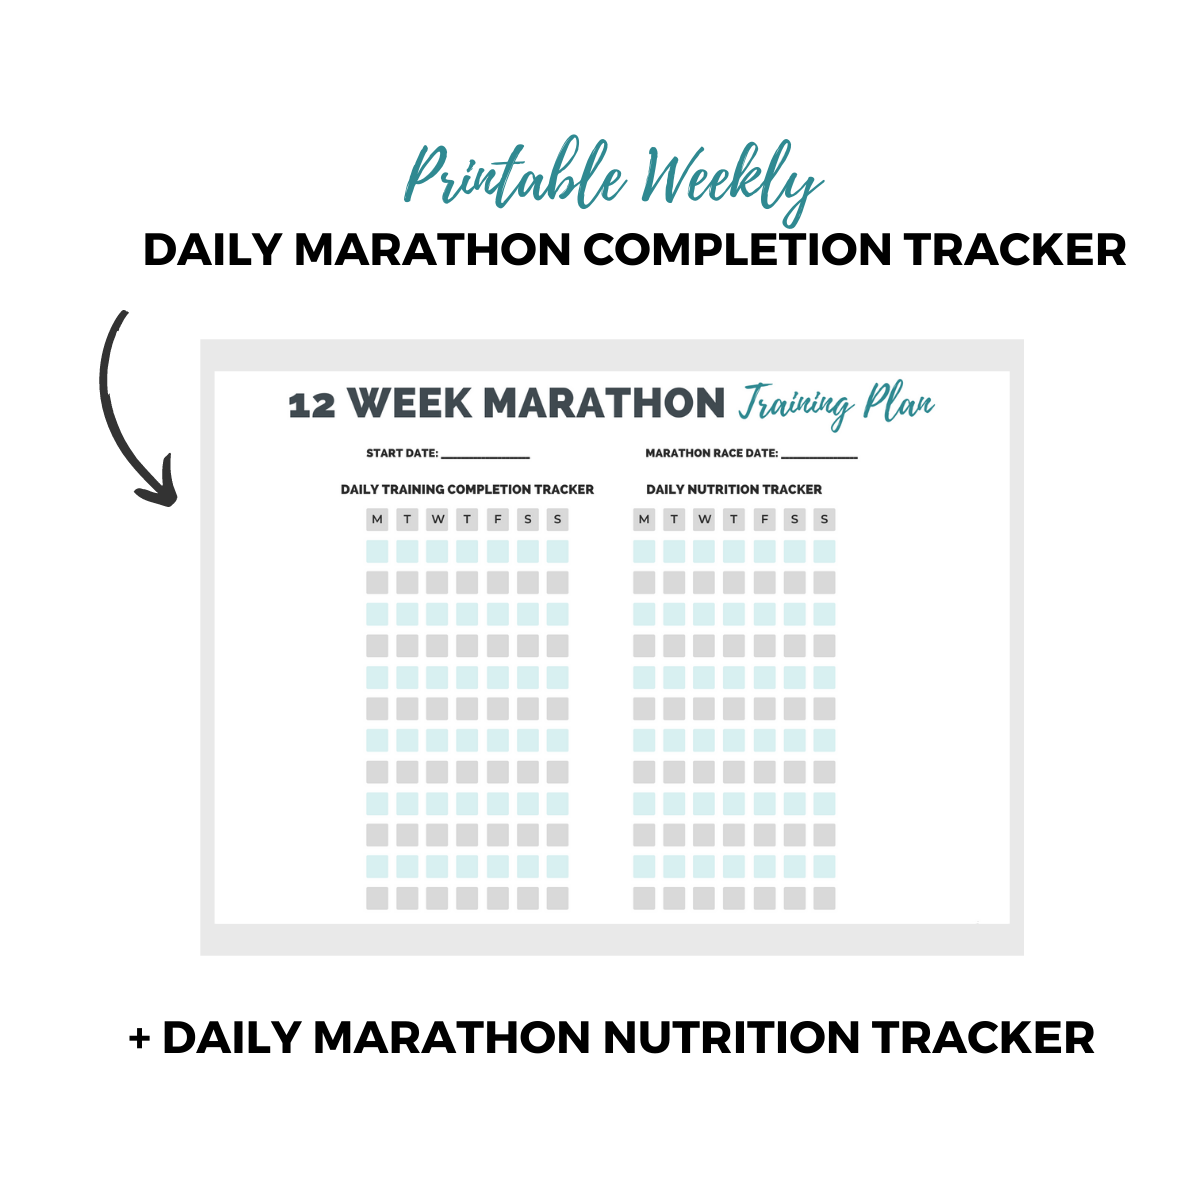 12 Week Marathon Training Plan Tracker Sheet